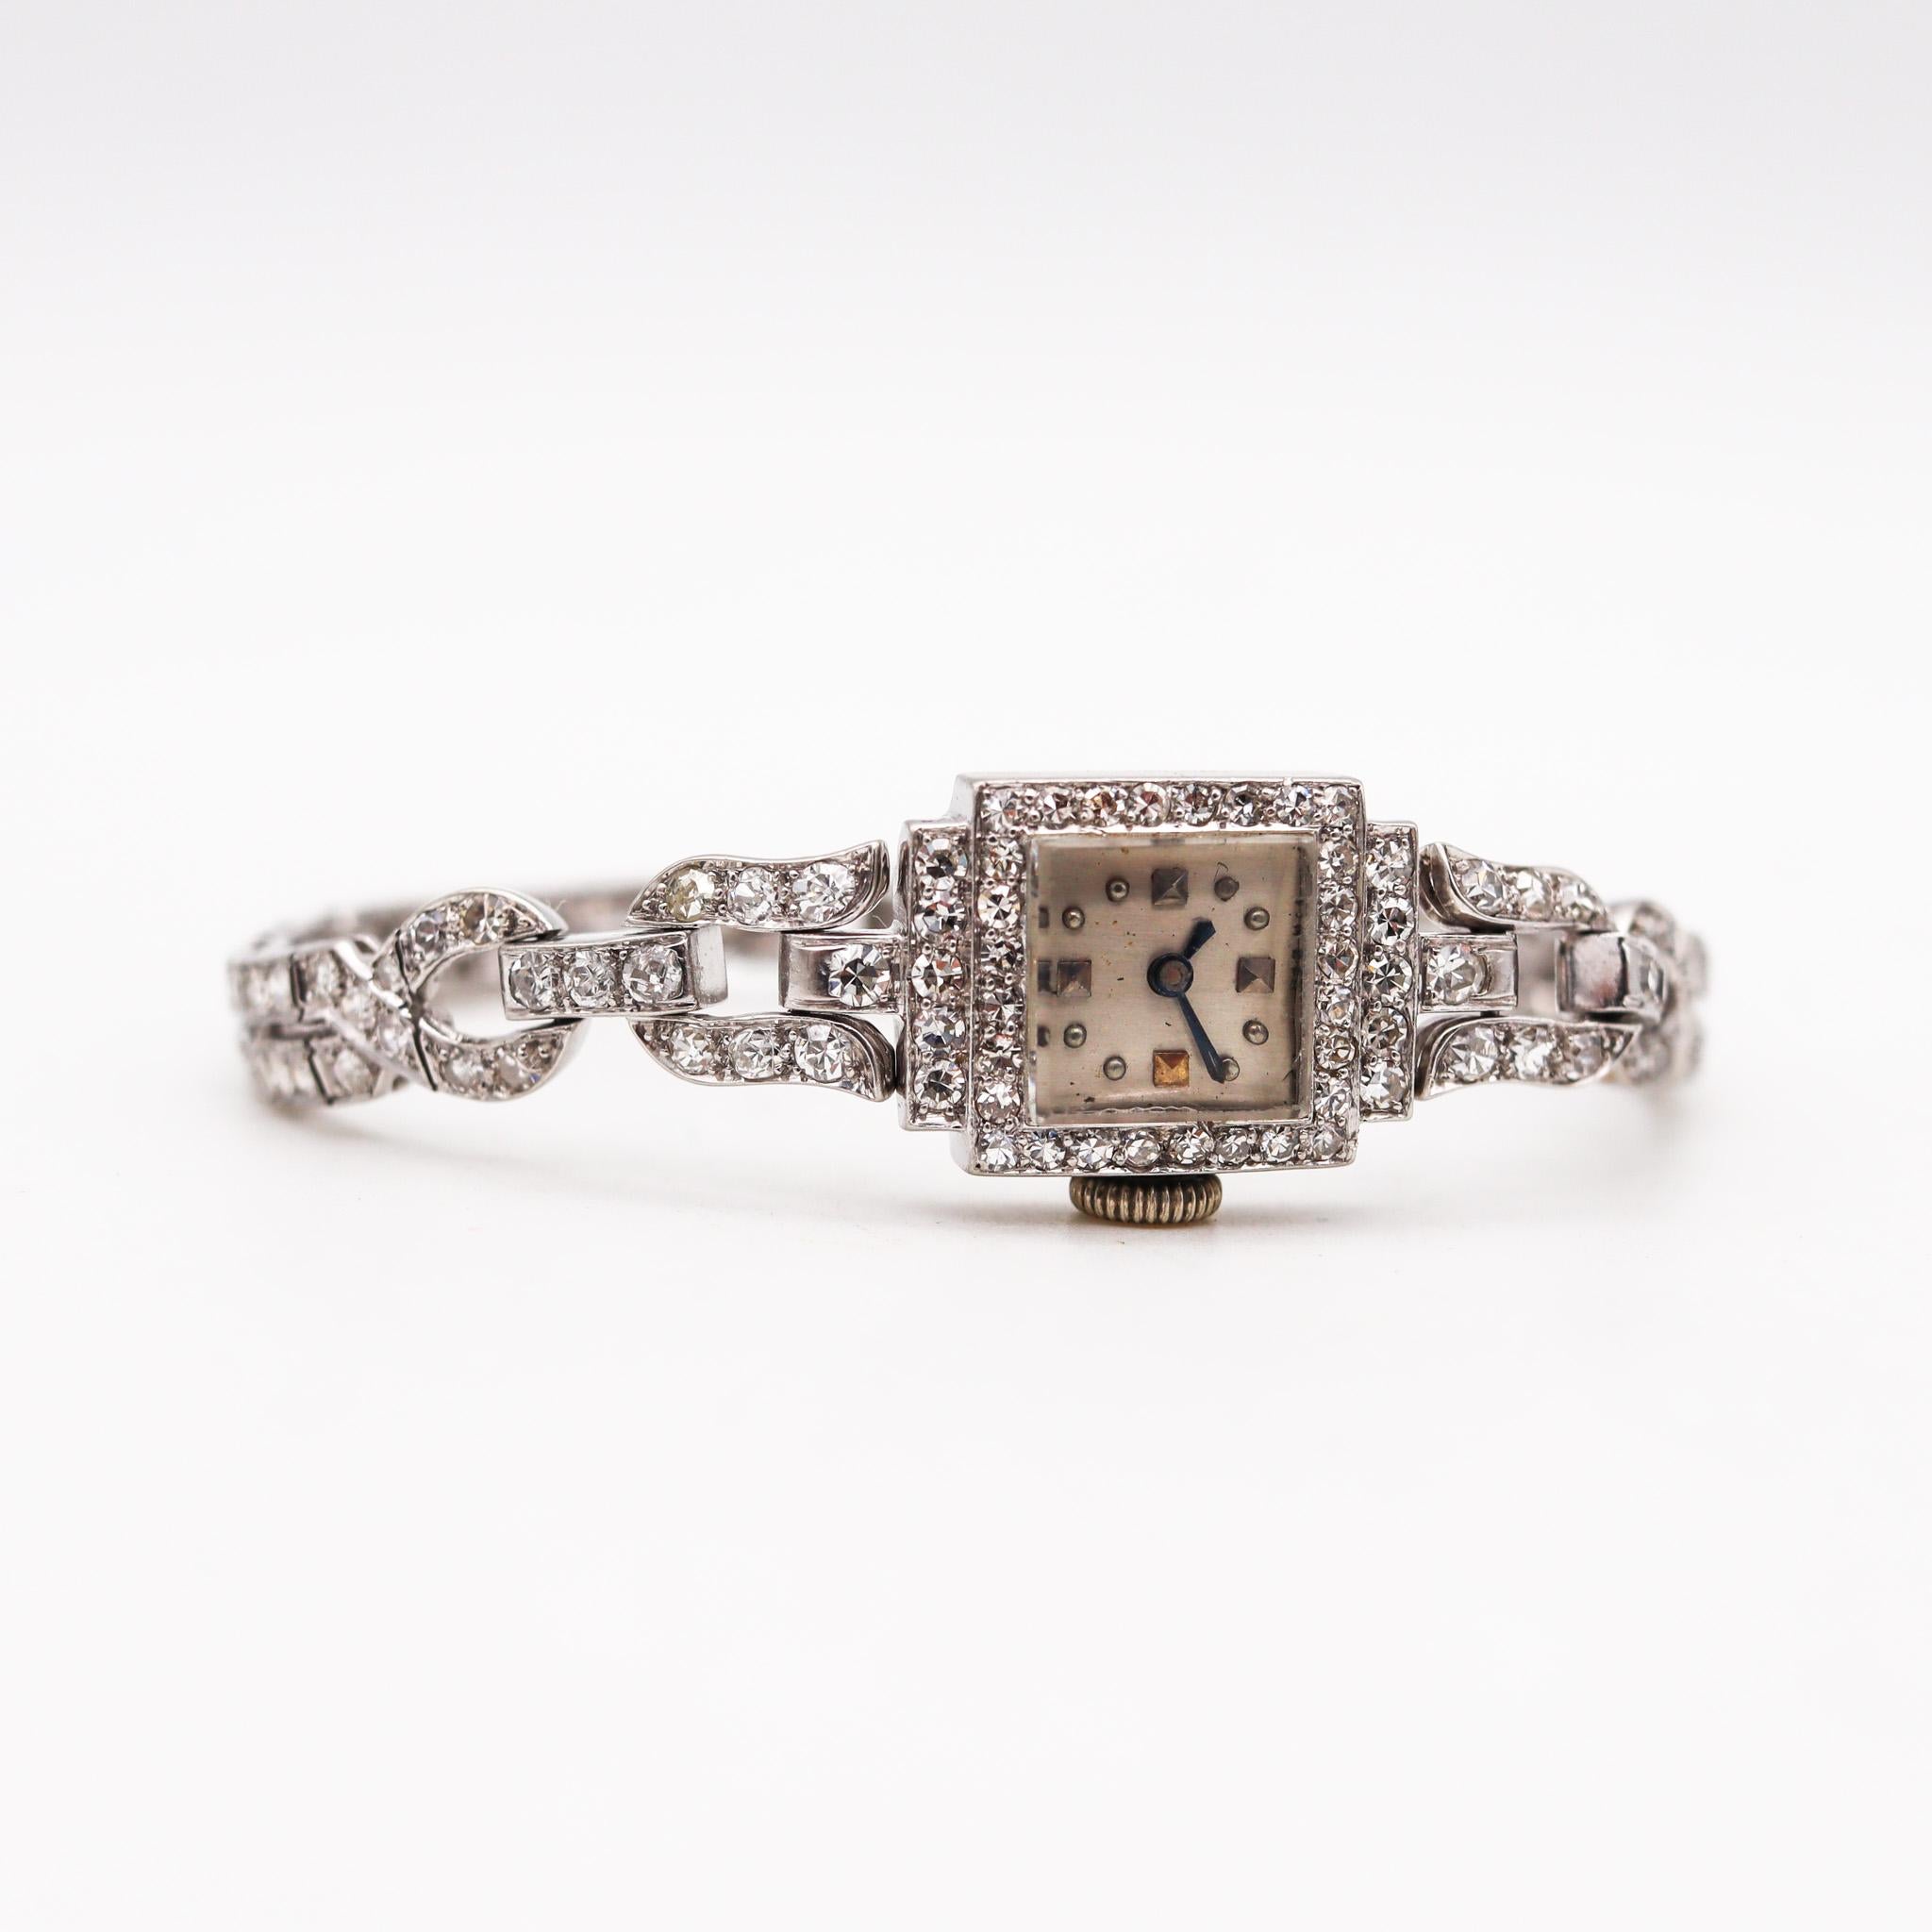 Montre-bracelet déco en platine.

Magnifique montre-bracelet de dame très décorée, fabriquée en Amérique à l'époque de l'art déco, dans les années 1930. Cette élégante montre-bracelet a été fabriquée en platine massif .900/.999 et en Iridium